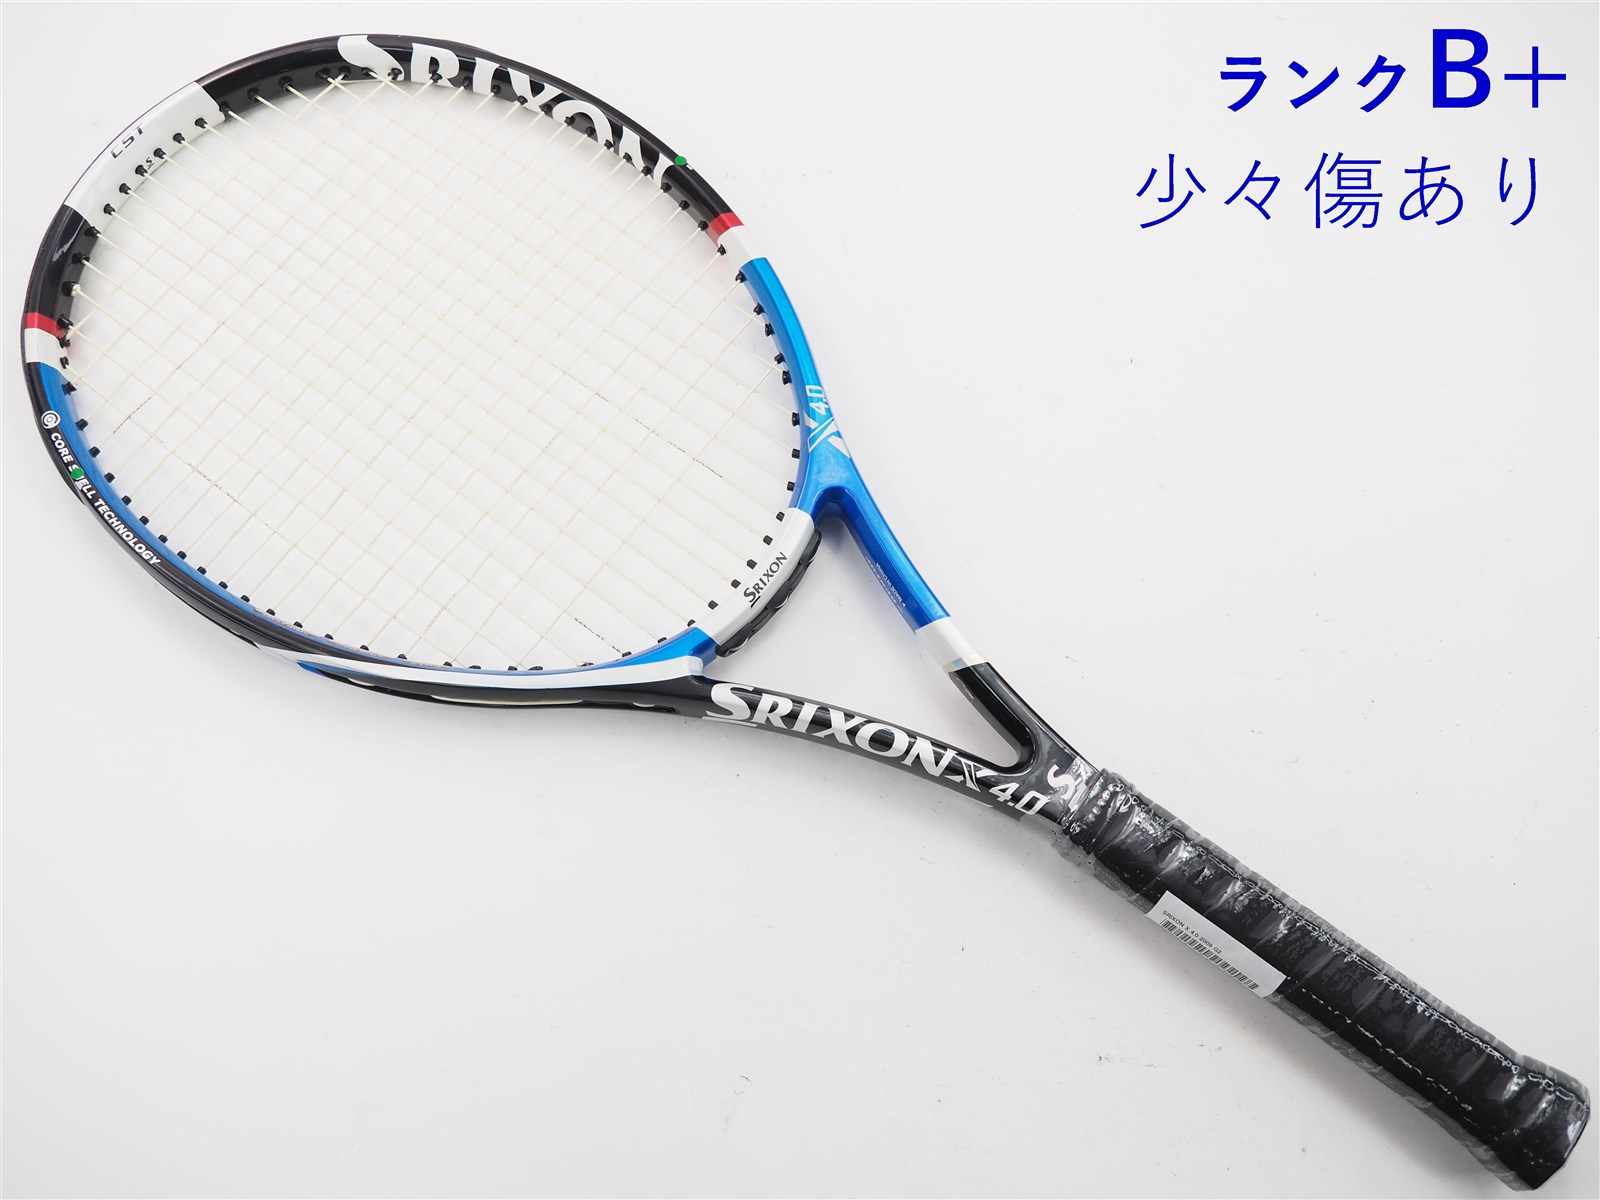 テニスラケット スリクソン スリクソン エックス 4.0 2009年モデル (G2